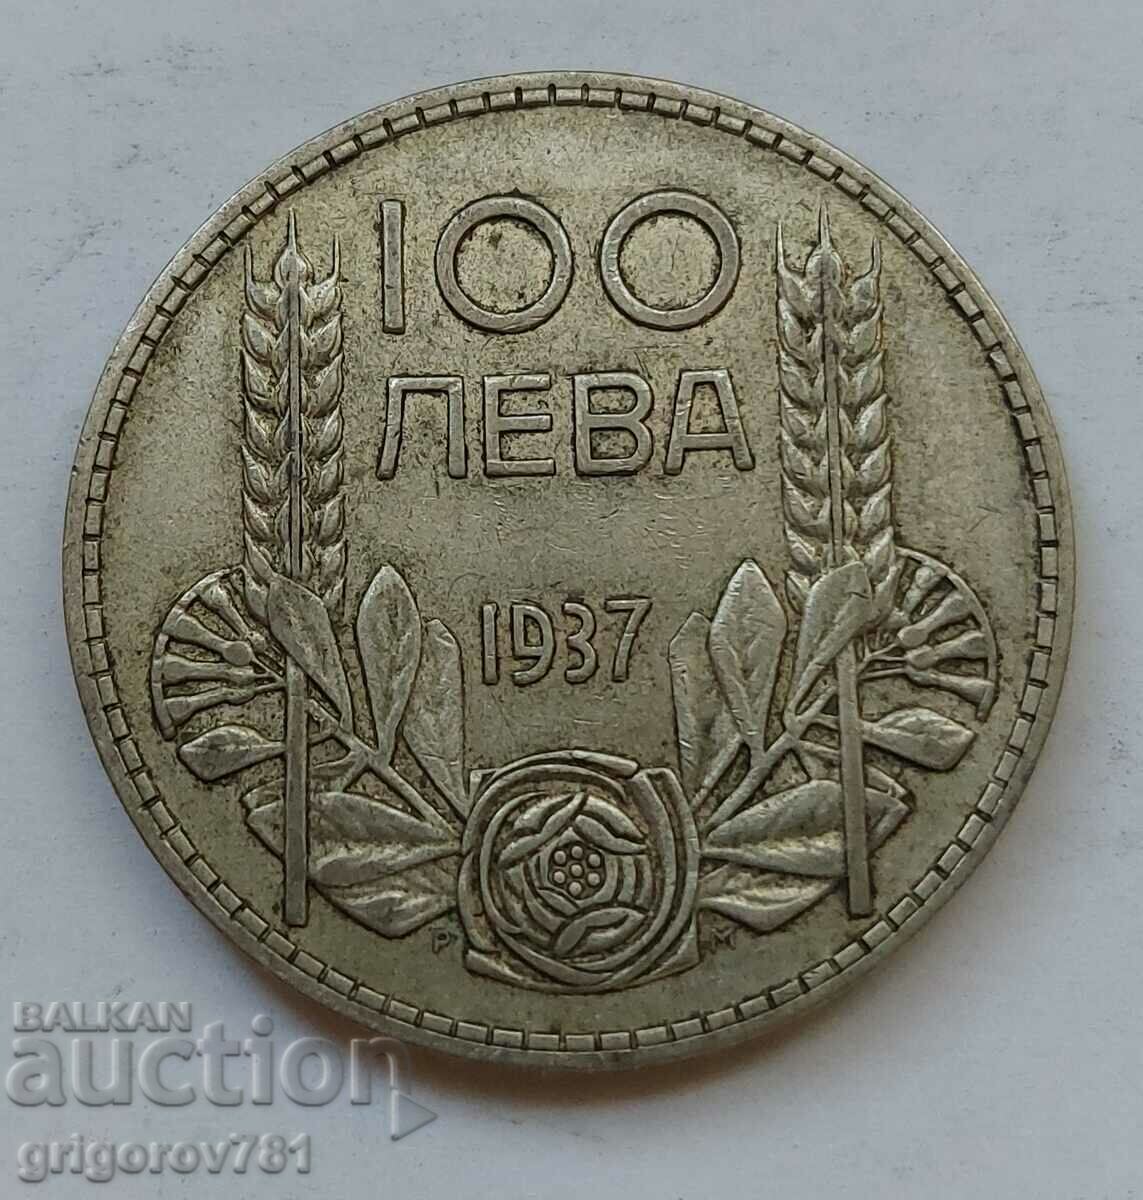 Ασήμι 100 λέβα Βουλγαρία 1937 - ασημένιο νόμισμα #140